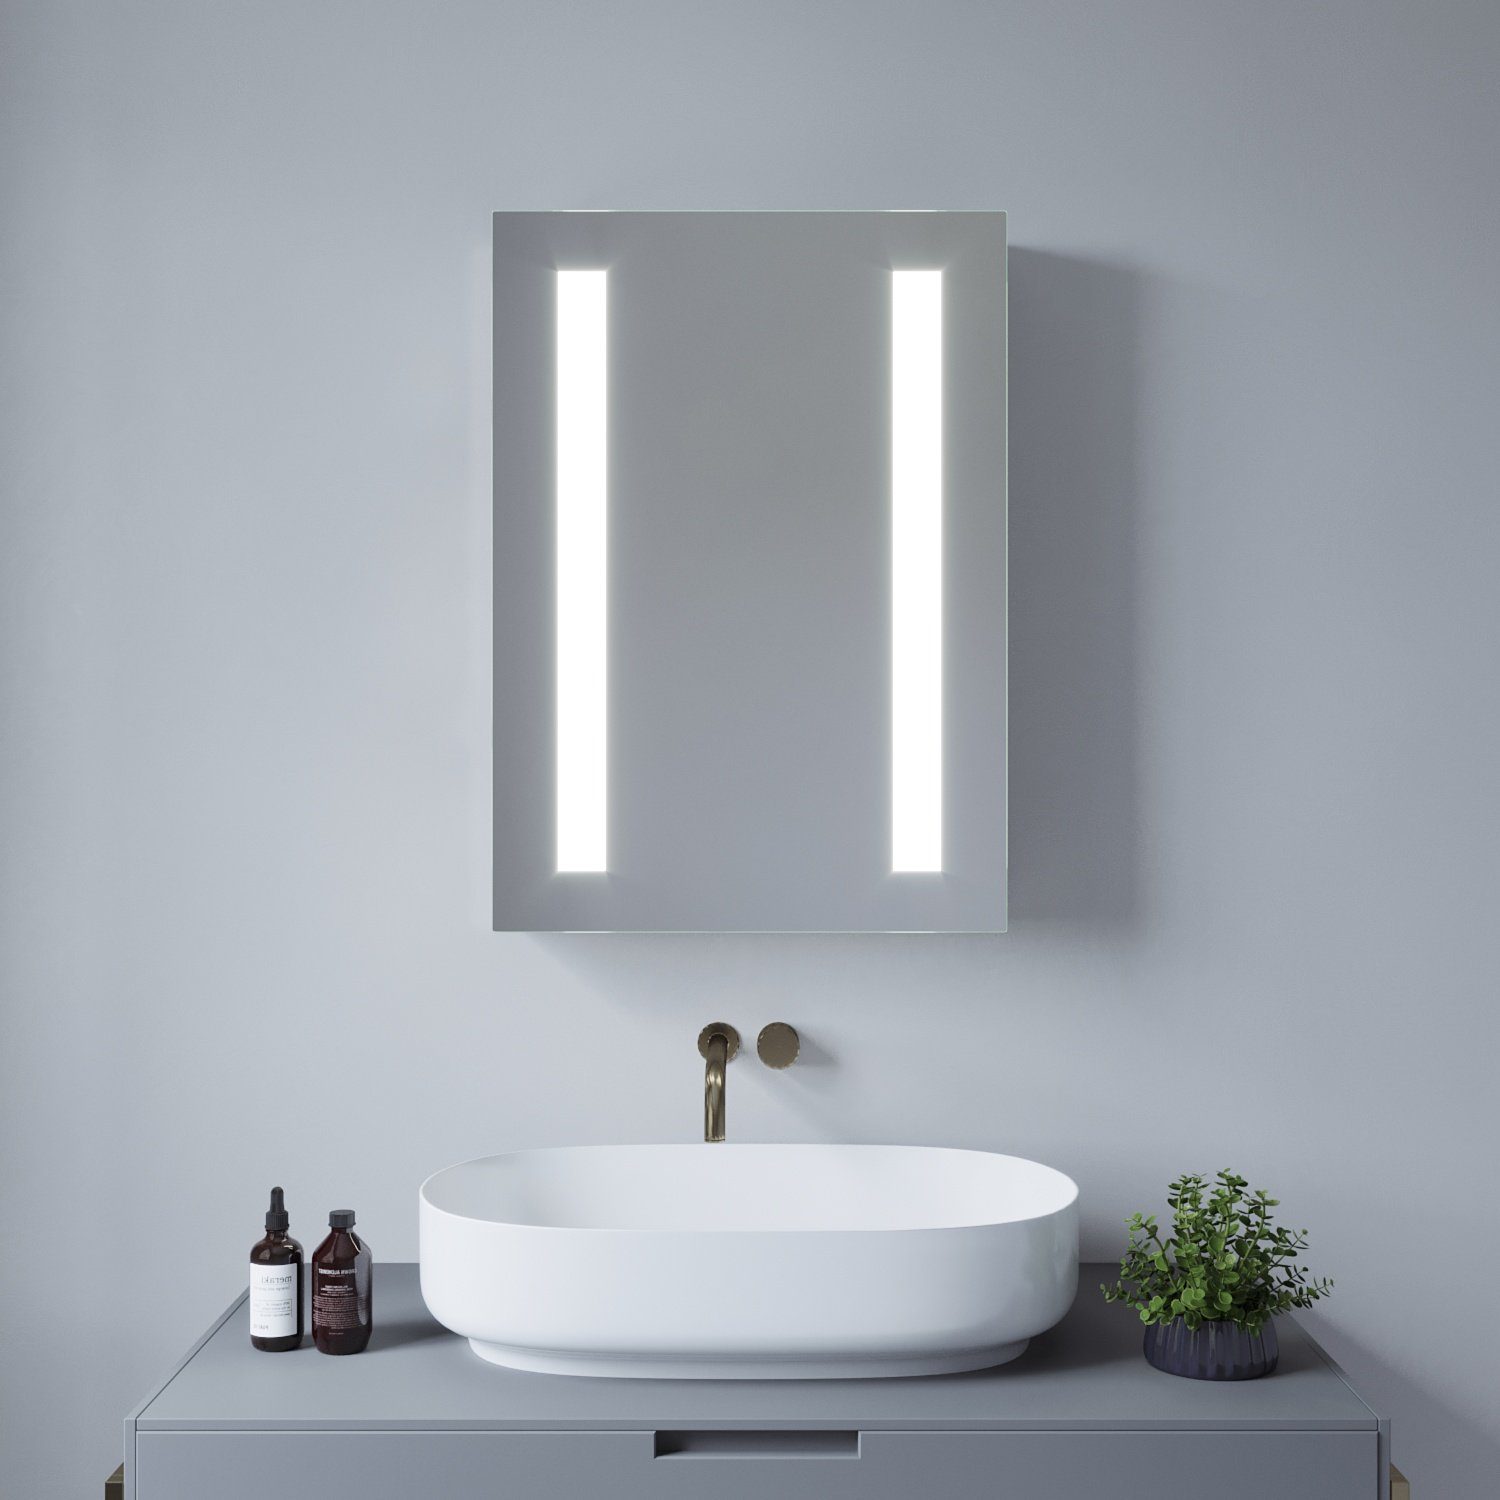 AQUALAVOS Spiegelschrank Spiegelschrank mit LED Kaltweiß Beleuchtung für Badezimmer Badschrank Wandschrank 50x70 cm mit 1 Türig, Infrarot (IR) Sensor, Beschlagfrei